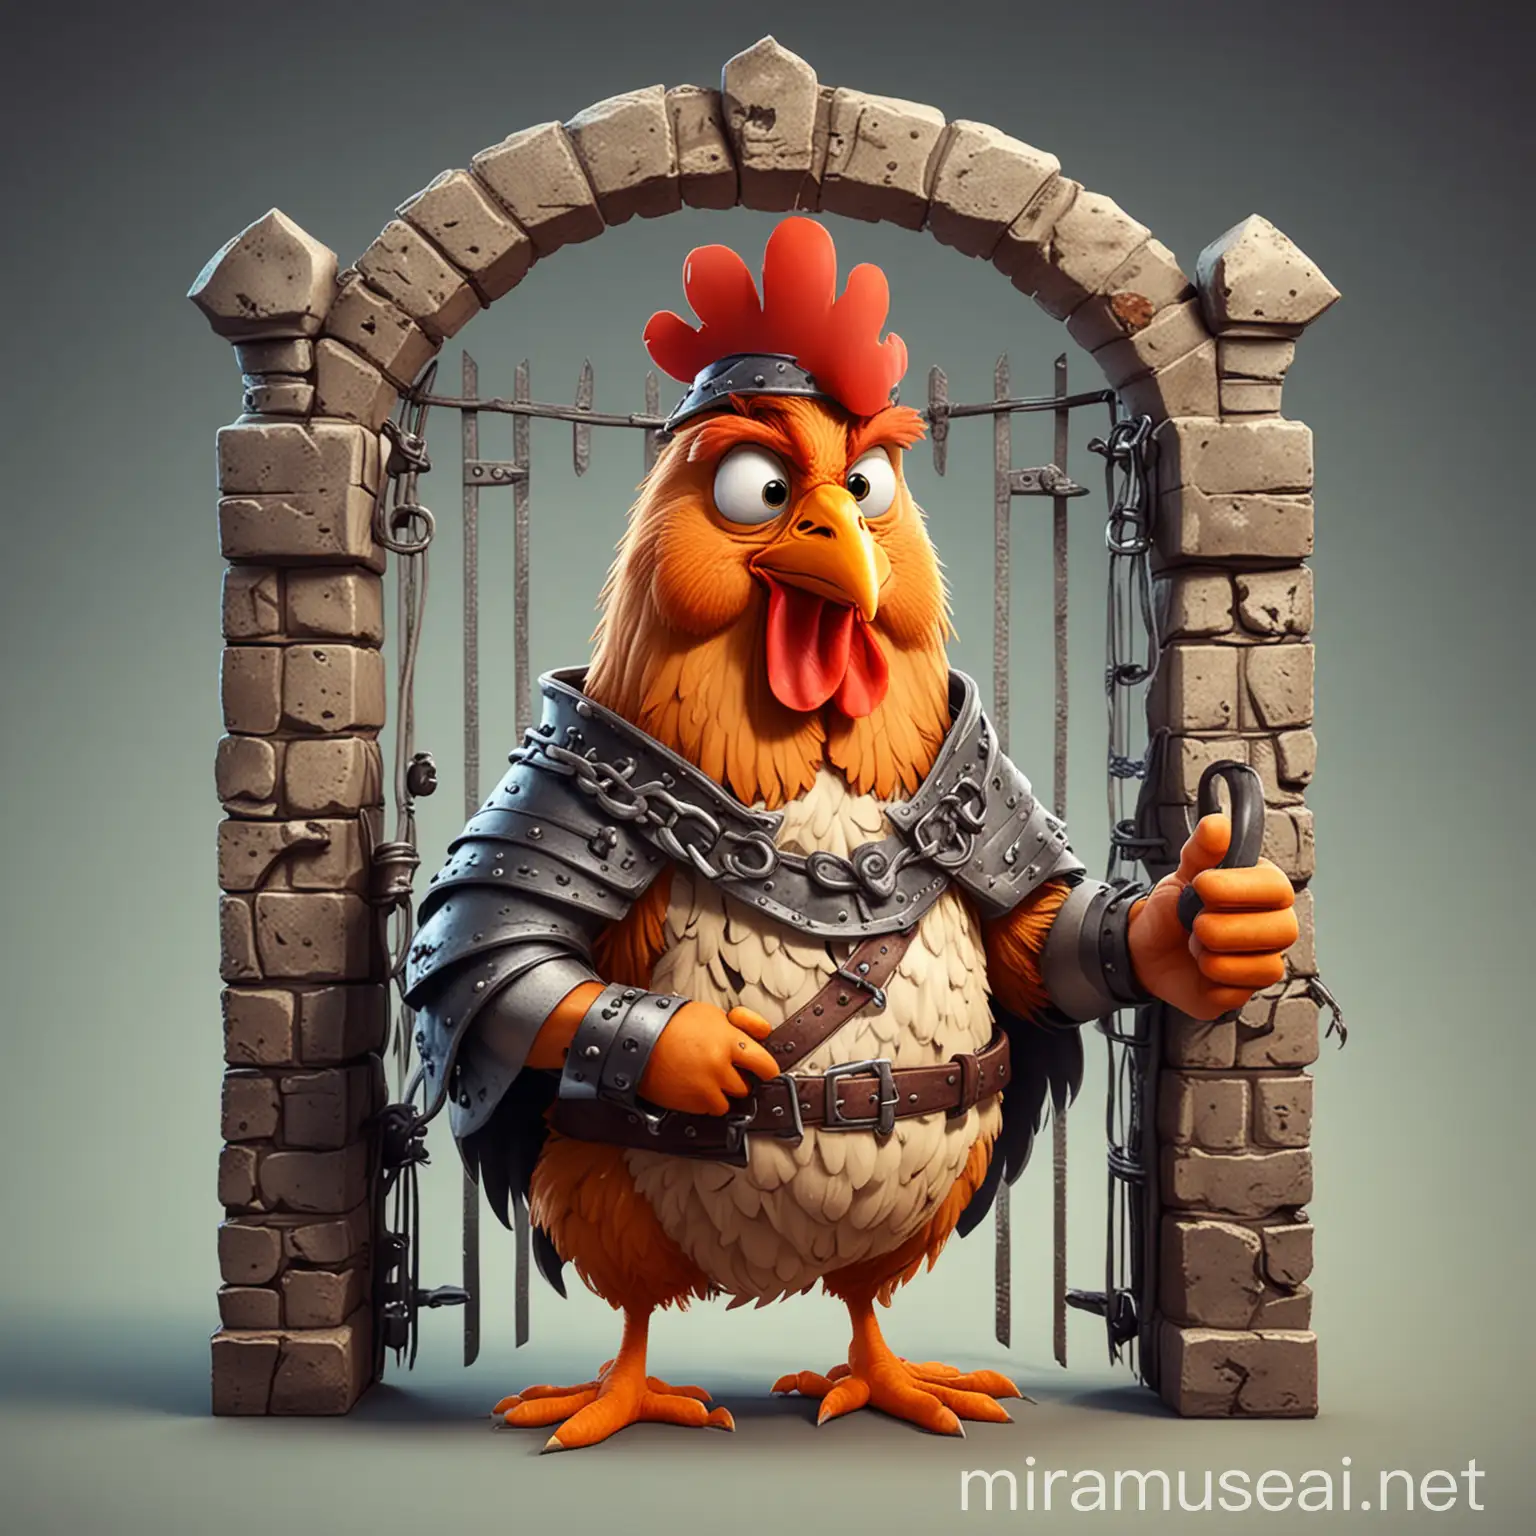 цыпленок средневековый пленник в стиле мультика